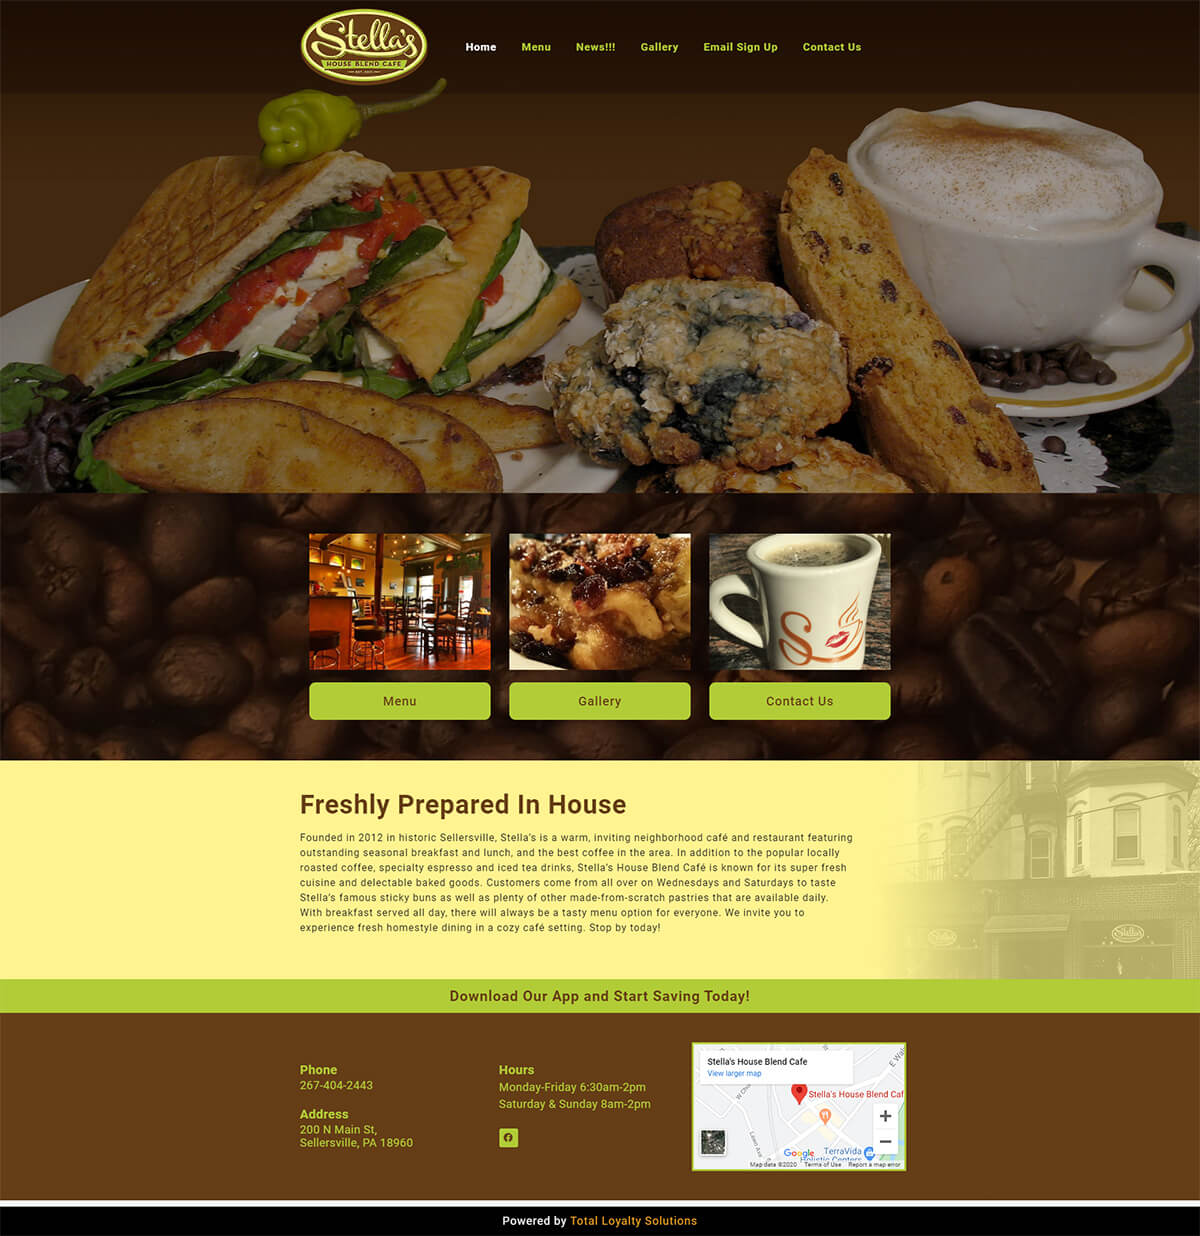 Stellas House Blend Cafe - TLS Mobile Friendly Website